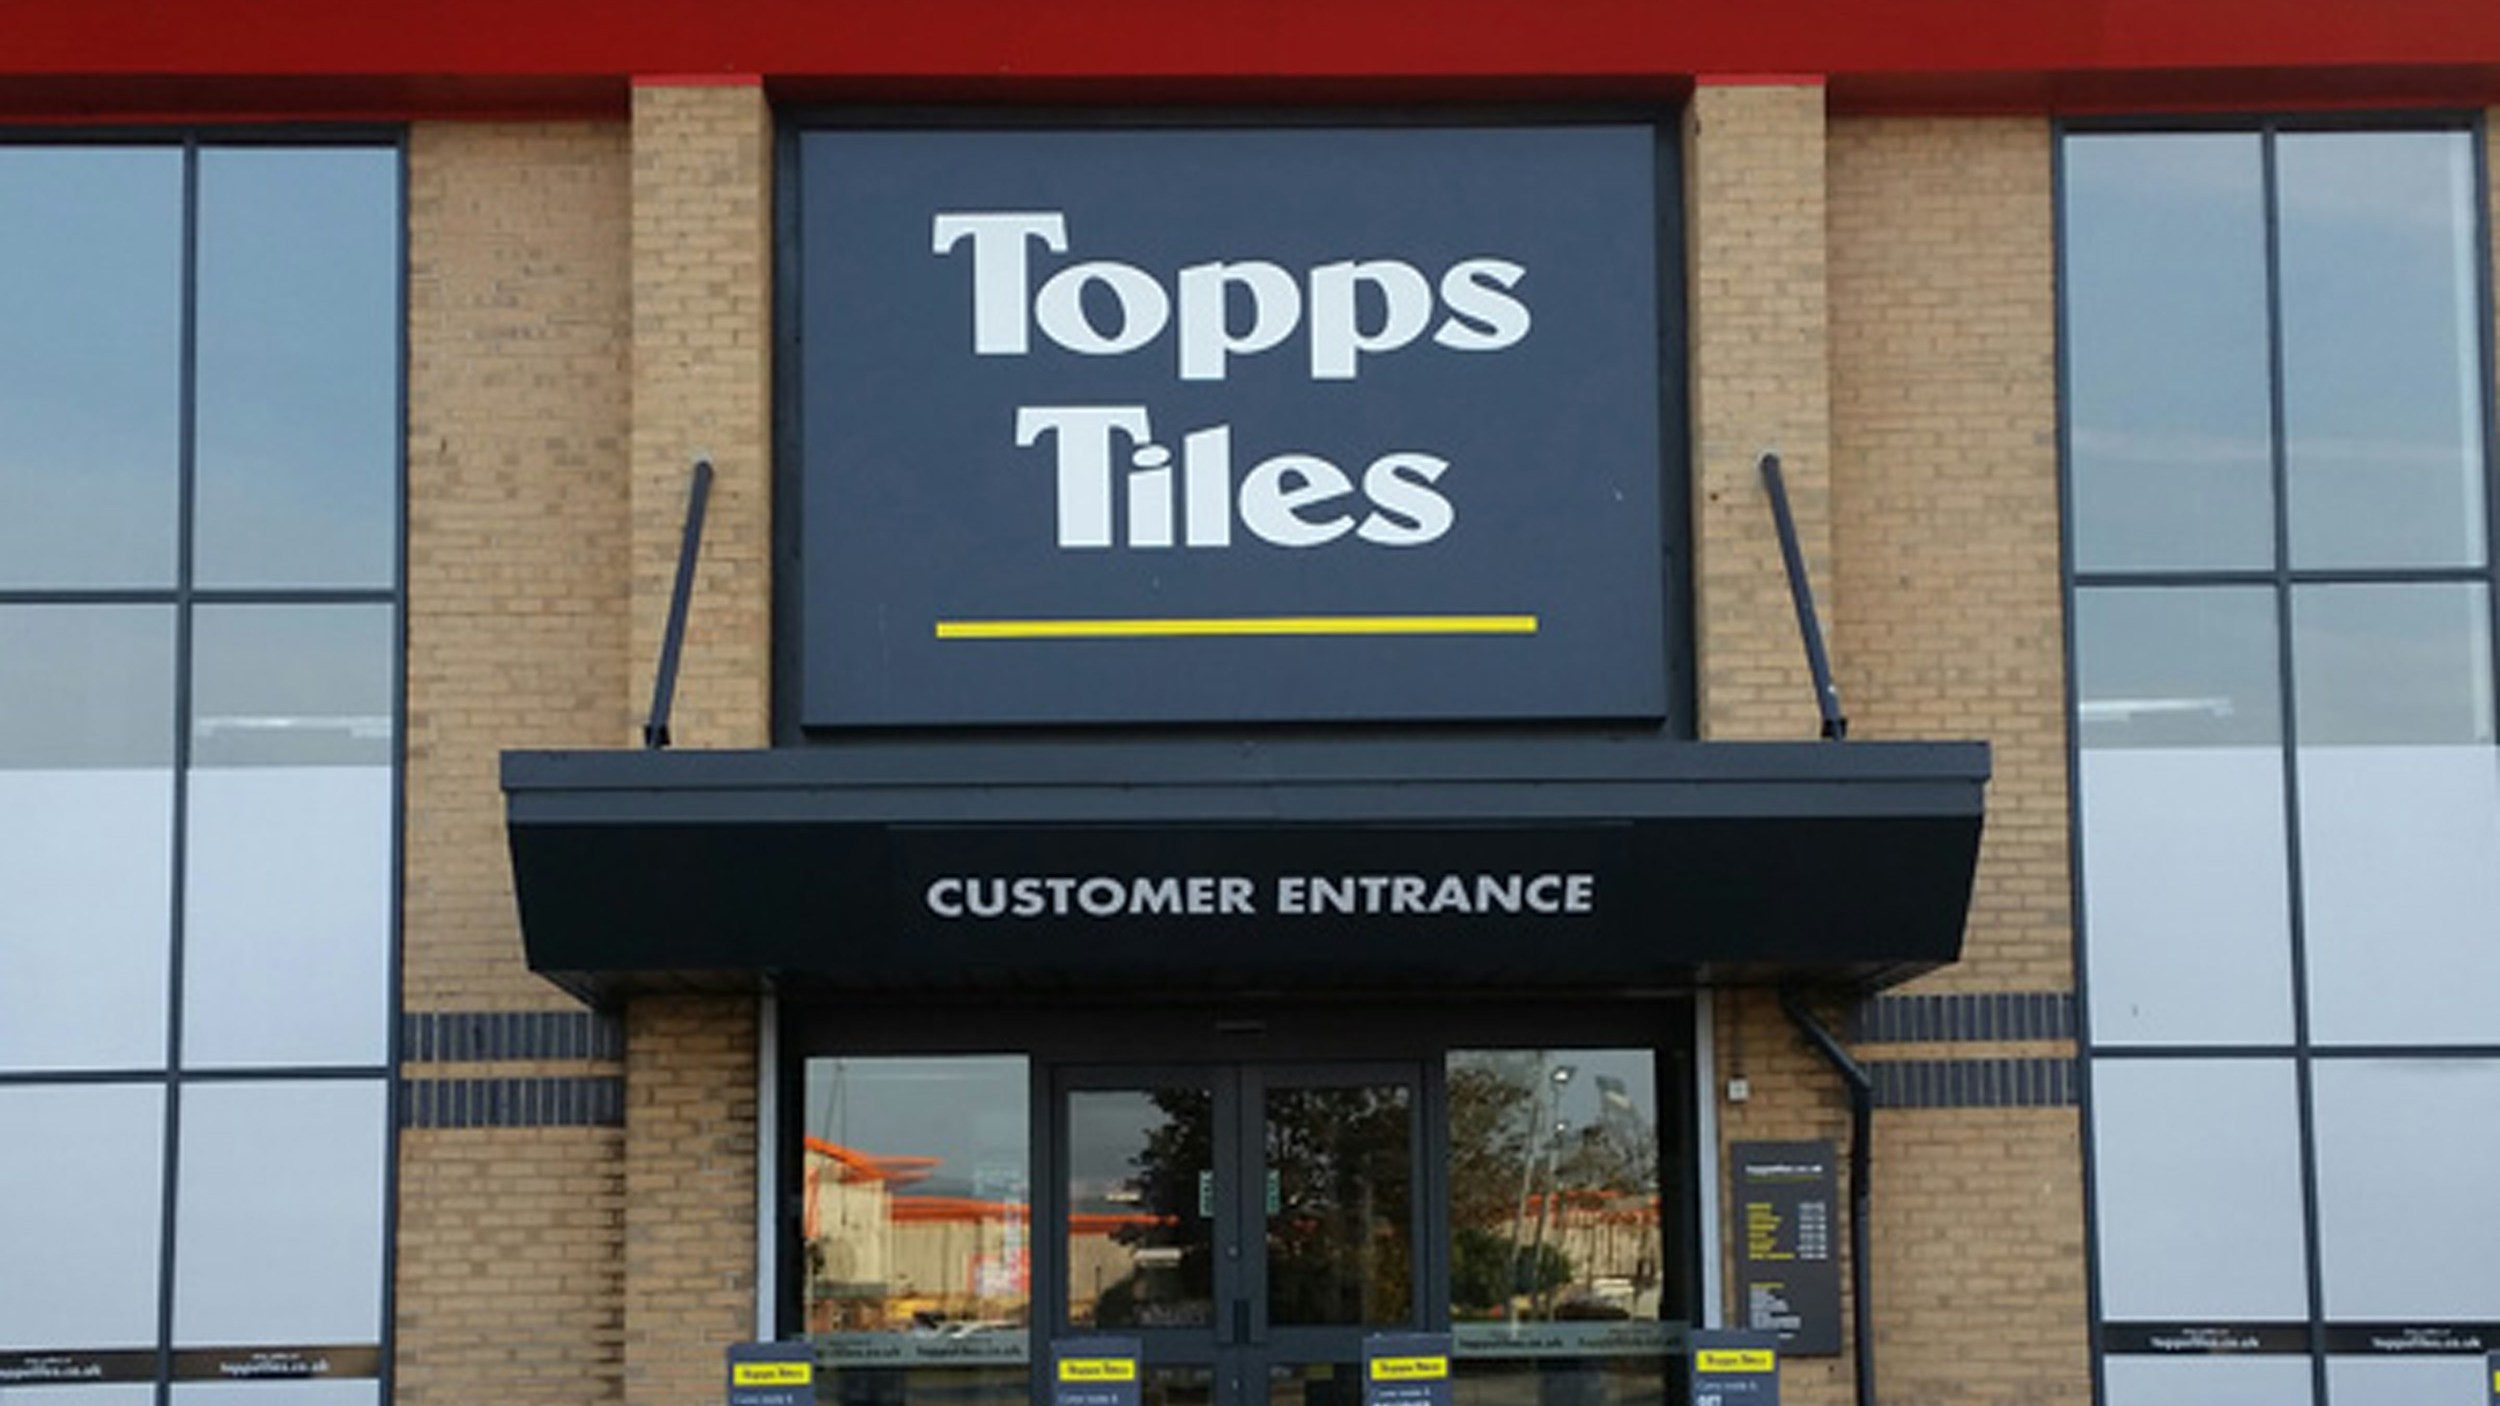 Sales fall at Topps as home improvements hit brick wall